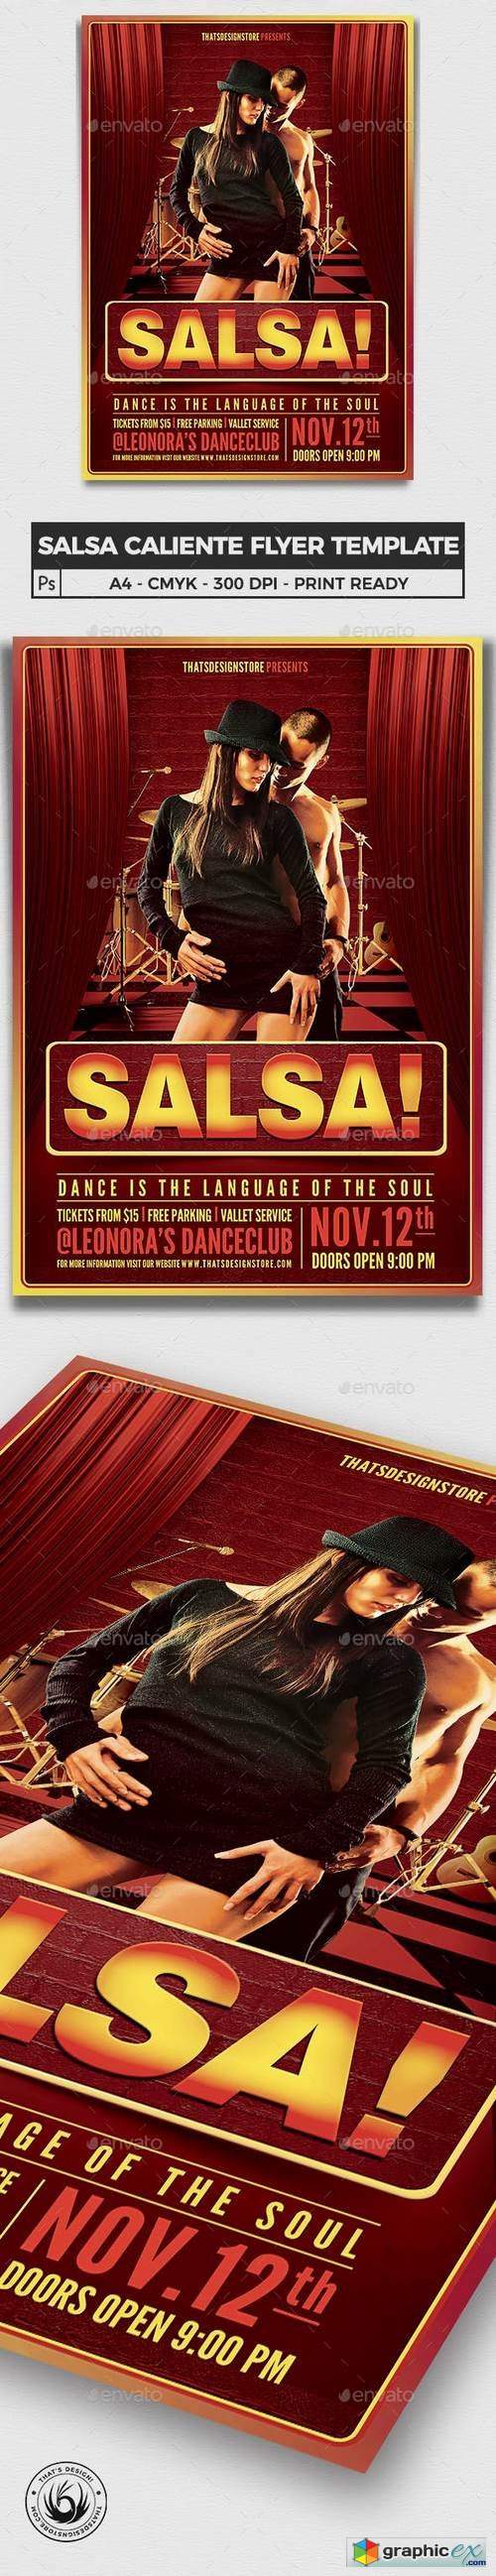 Salsa Caliente Flyer Template - Updated !